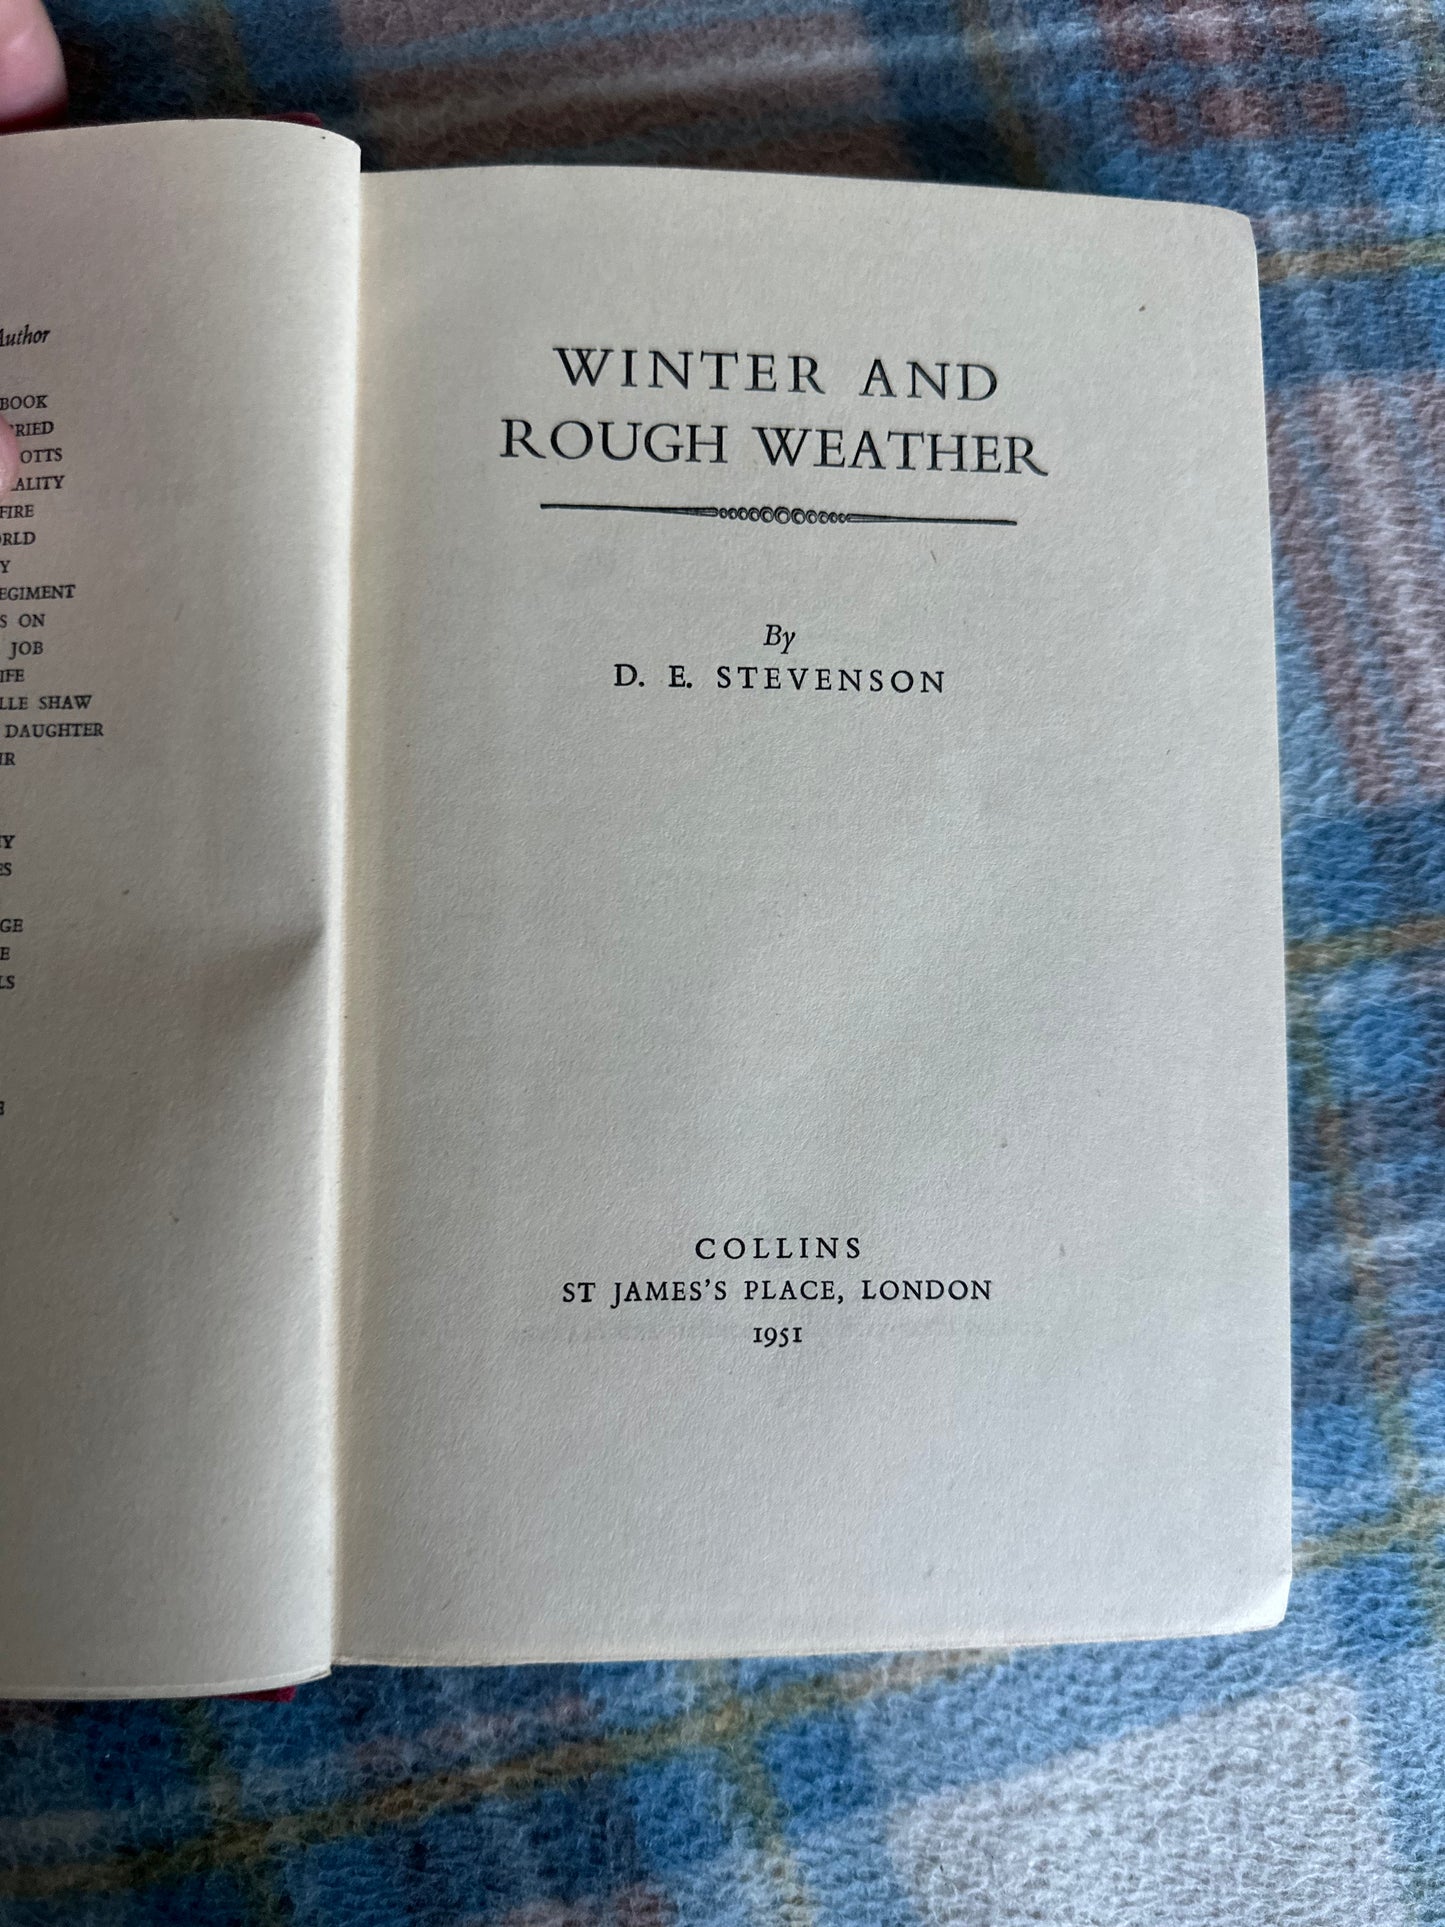 1951*1st* Winter & Rough Weather - D. E. Stevenson(Collins)